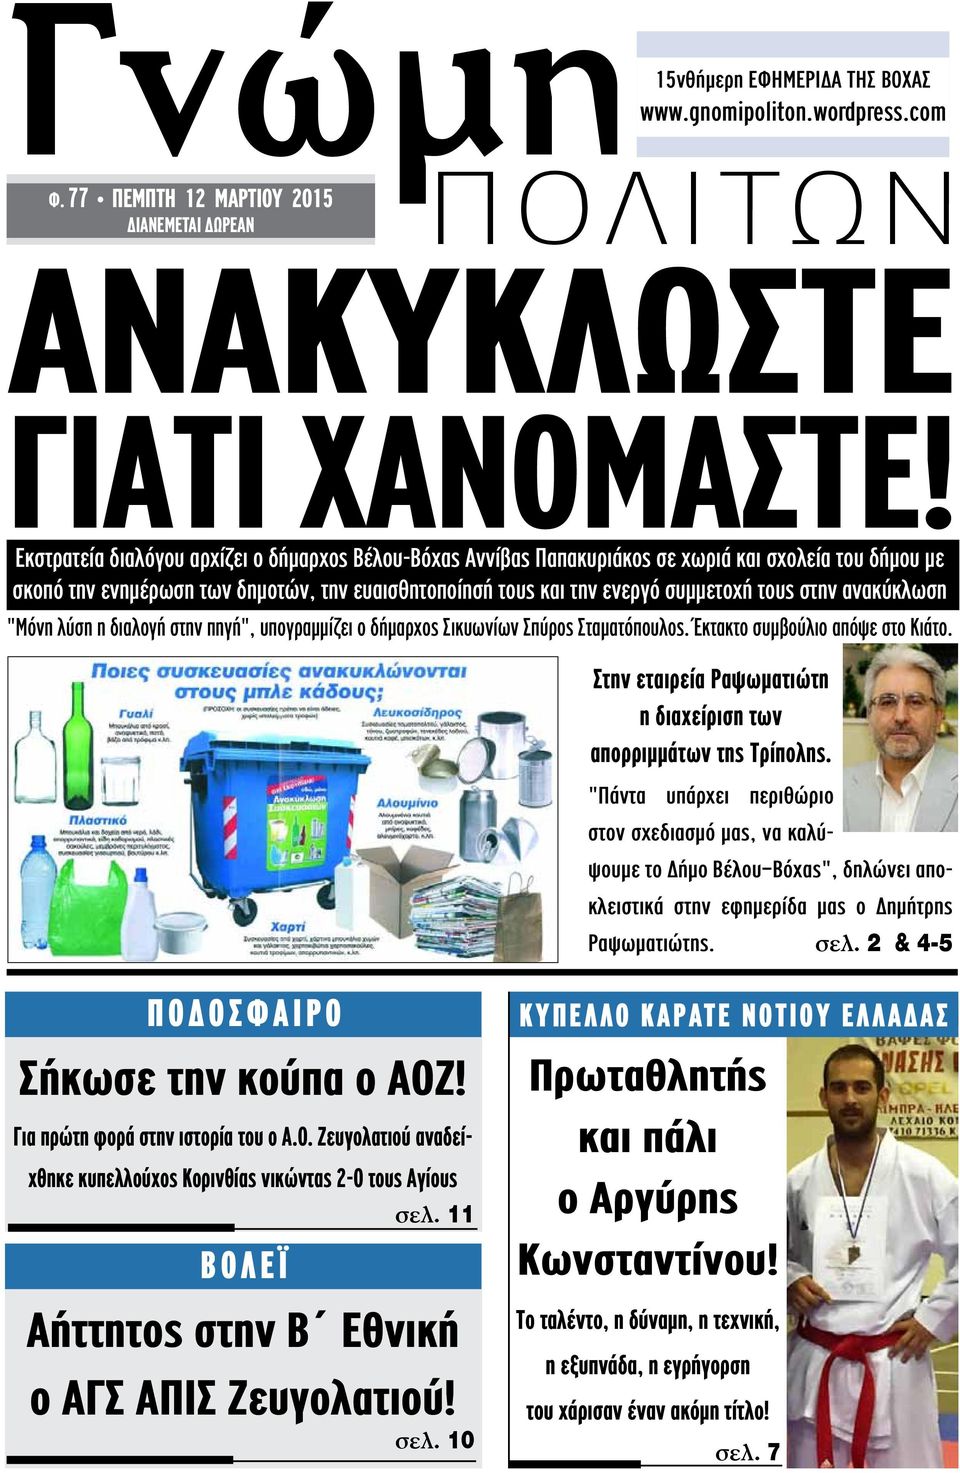 ανακύκλωση "Μόνη λύση η διαλογή στην πηγή", υπογραμμίζει ο δήμαρχος Σικυωνίων Σπύρος Σταματόπουλος. Έκτακτο συμβούλιο απόψε στο Κιάτο.